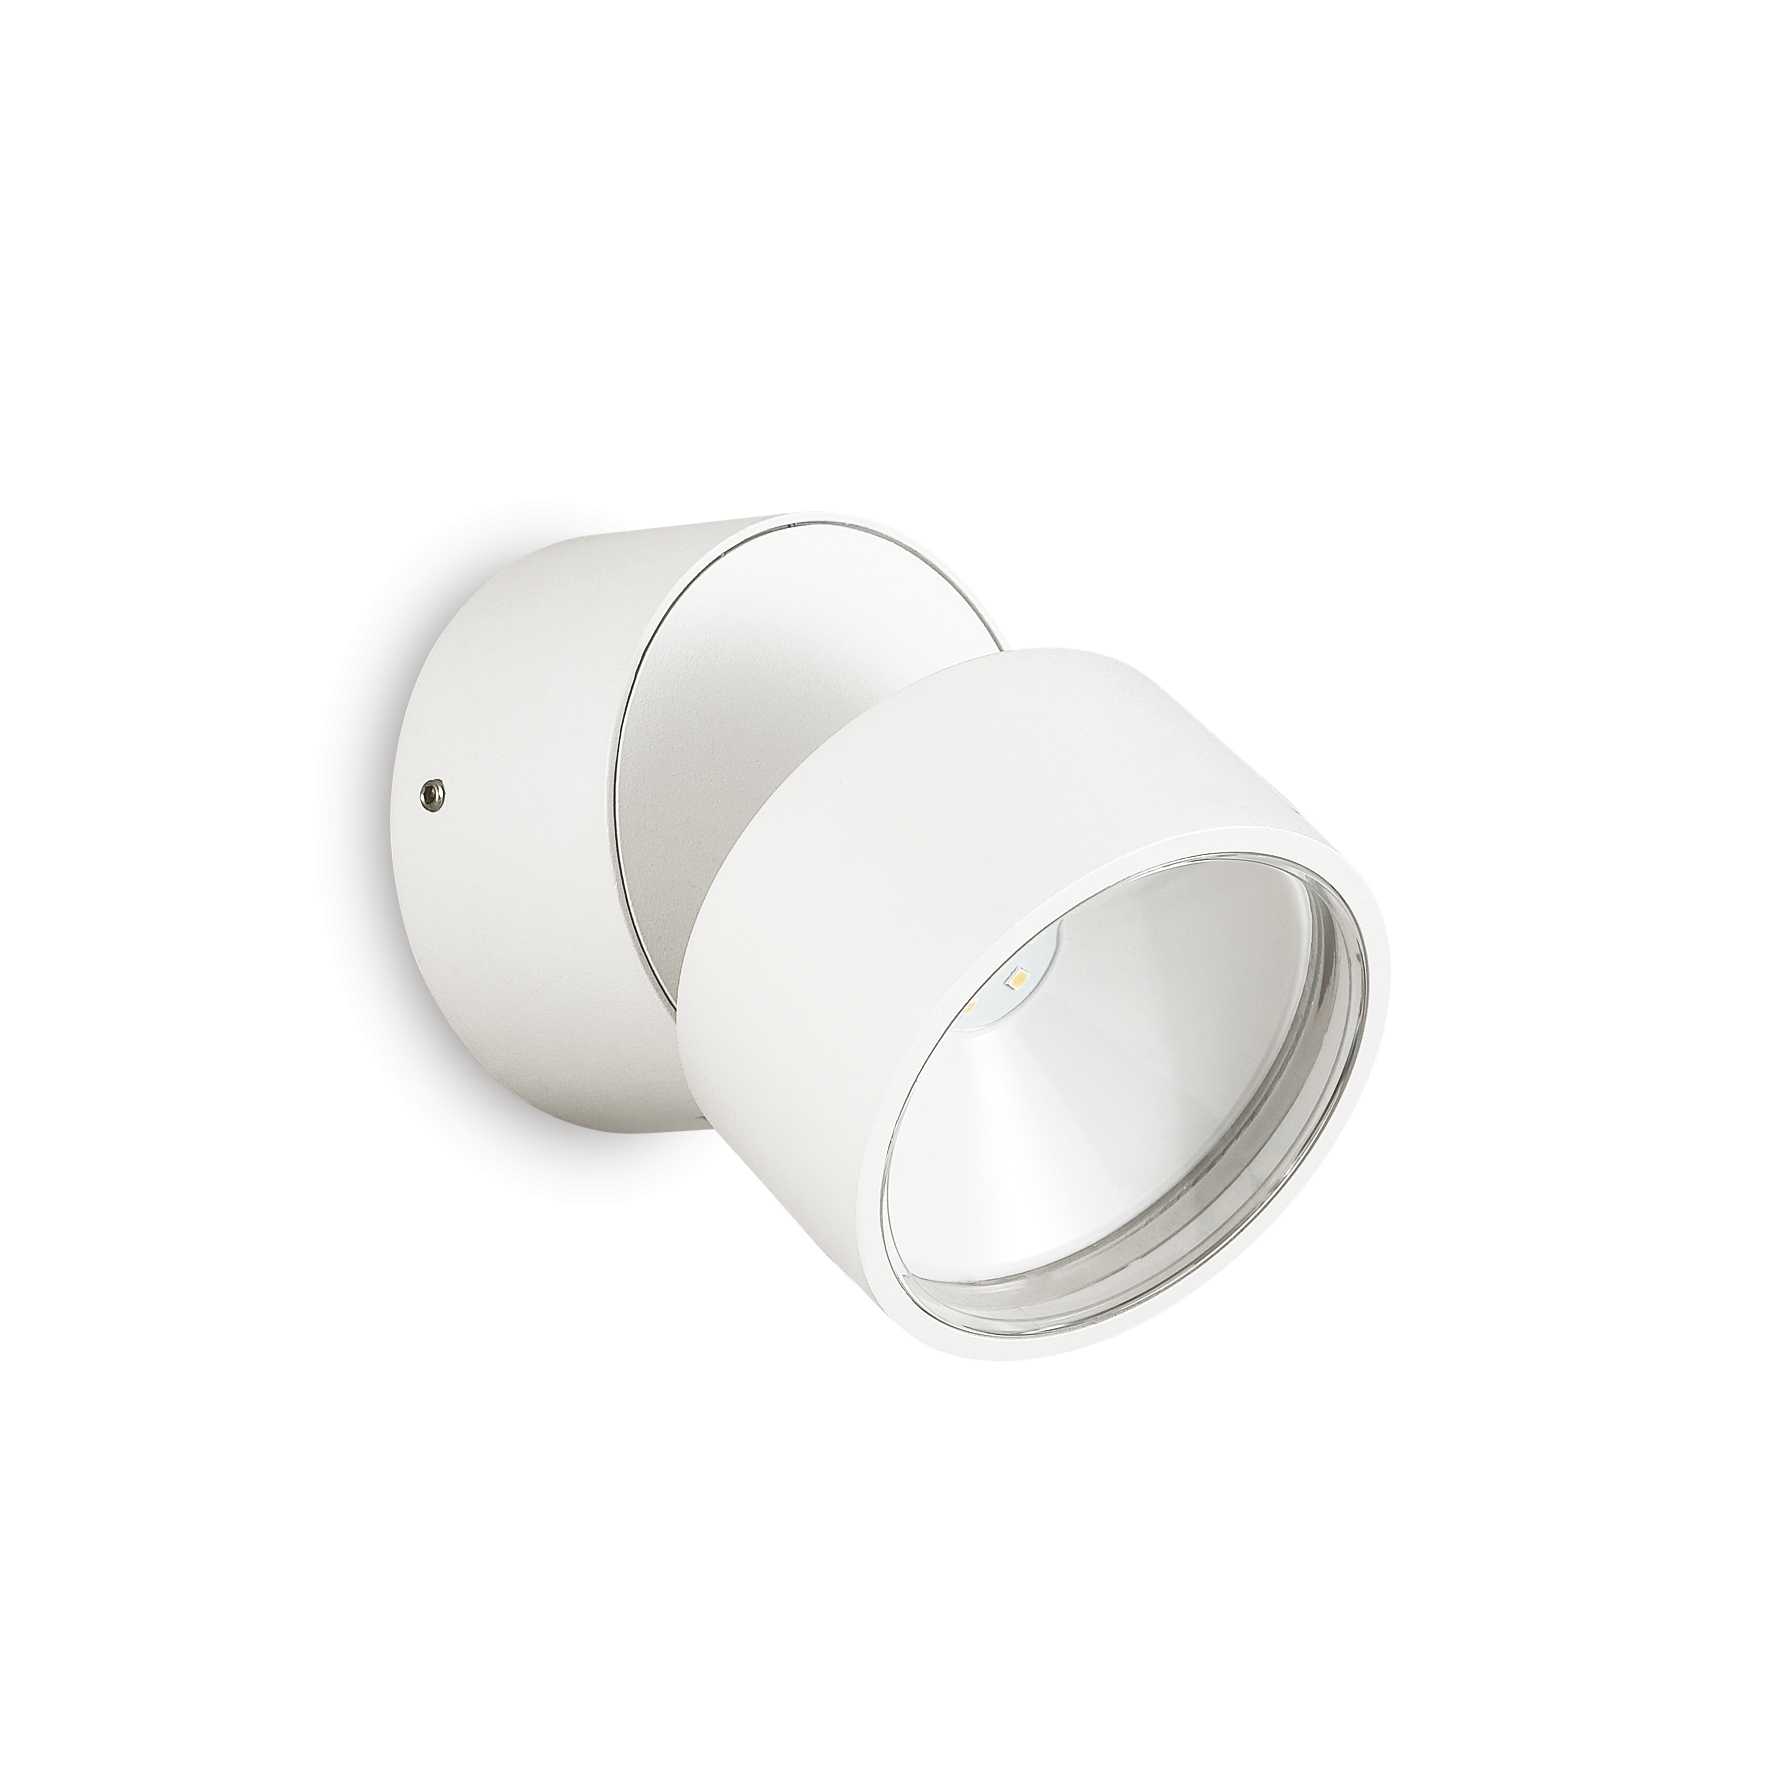 AD hotelska oprema Vanjska zidna lampa Omega ap okrugla (3000k)- Bijele boje slika proizvoda